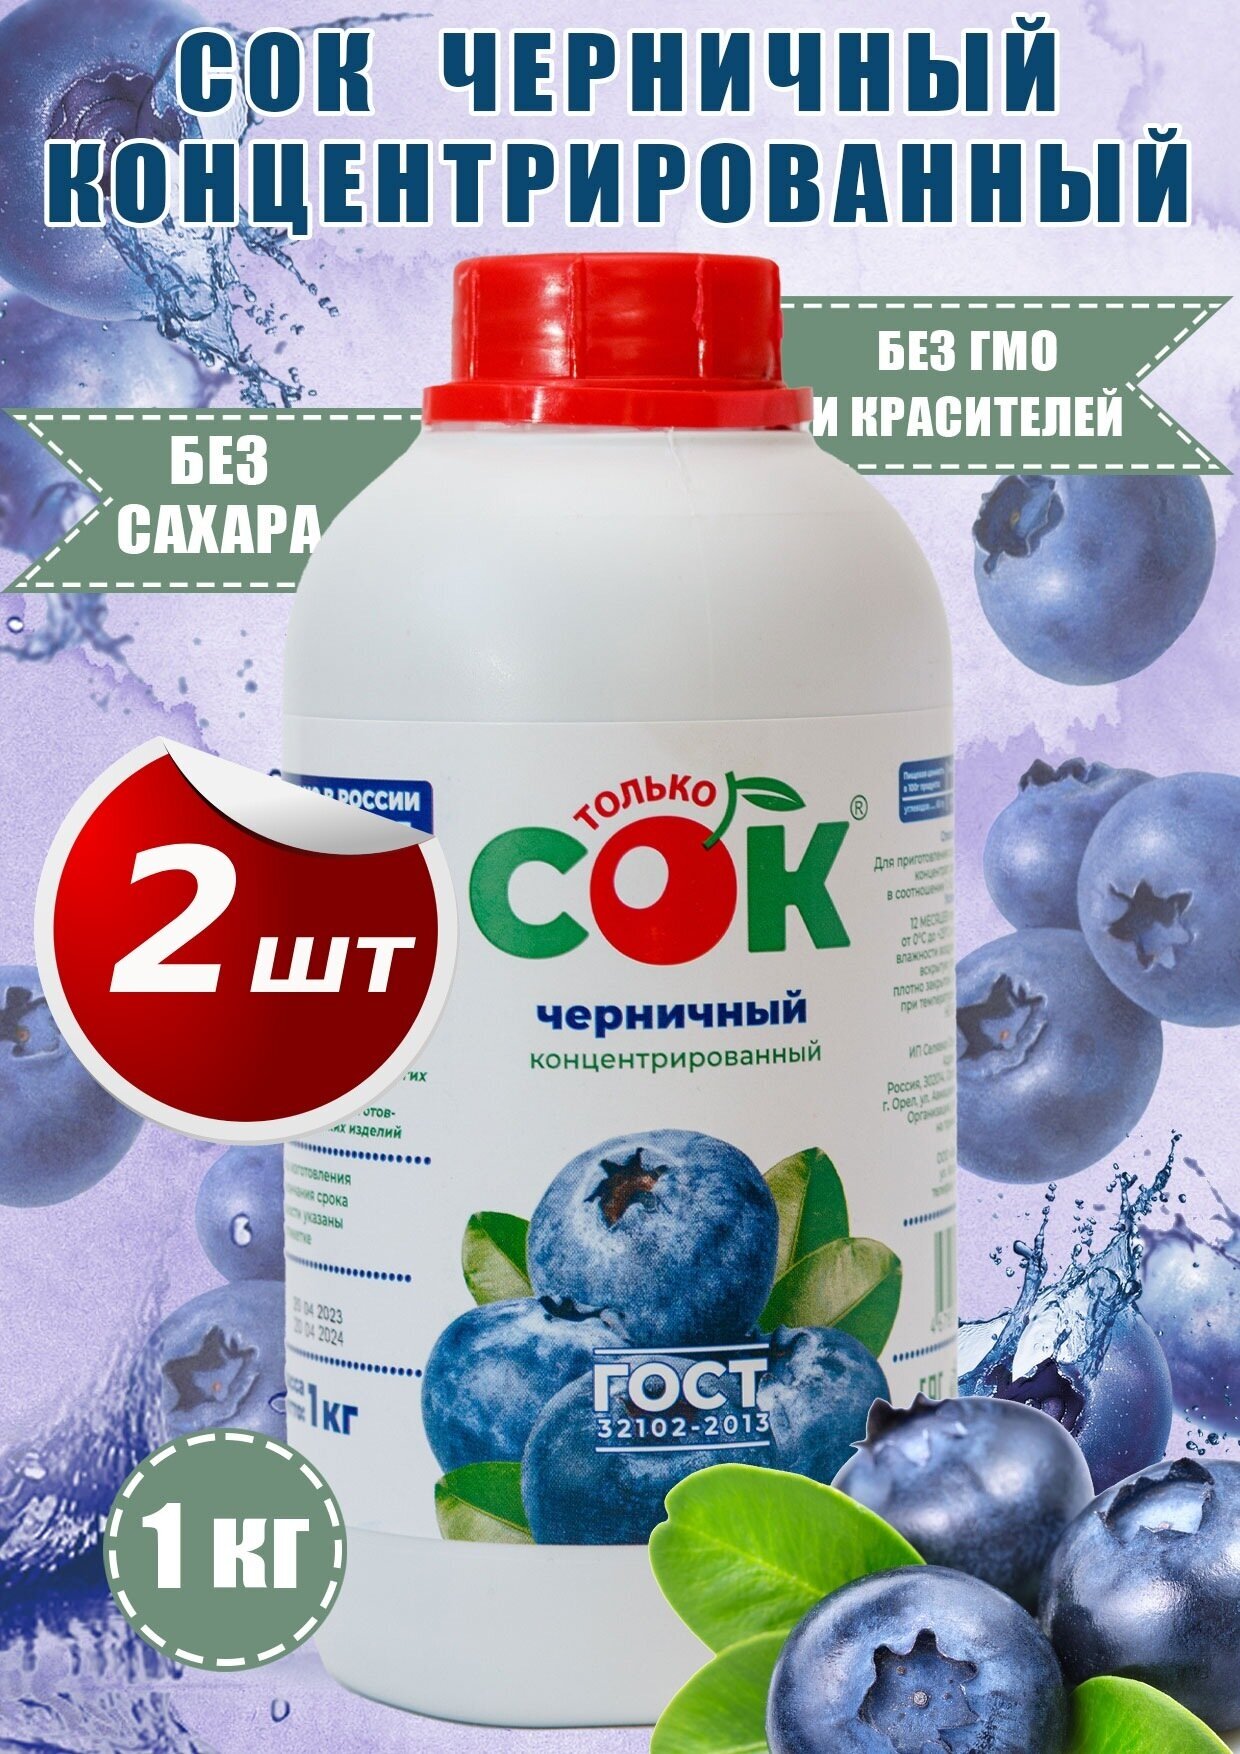 Концентрированный сок черничный "Только СОК" бутылка 1 кг 2шт